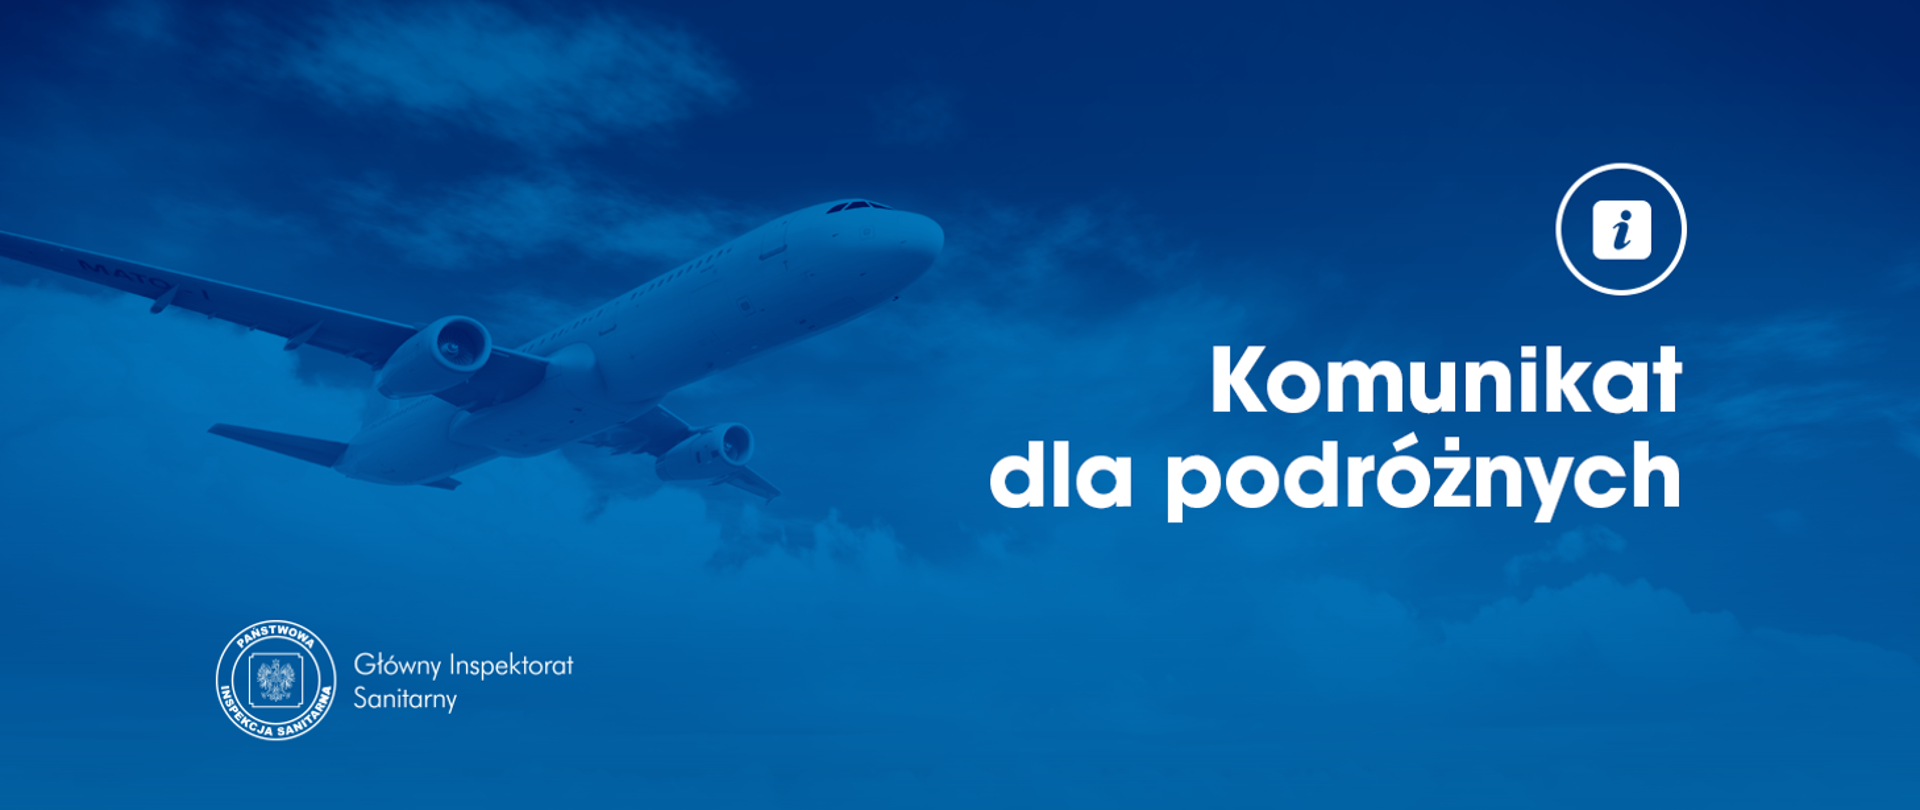 Grafika w kolorze niebieskim w tle samolot i napis Komunikat dla podróżnych. Główny Inspektorat Sanitarny